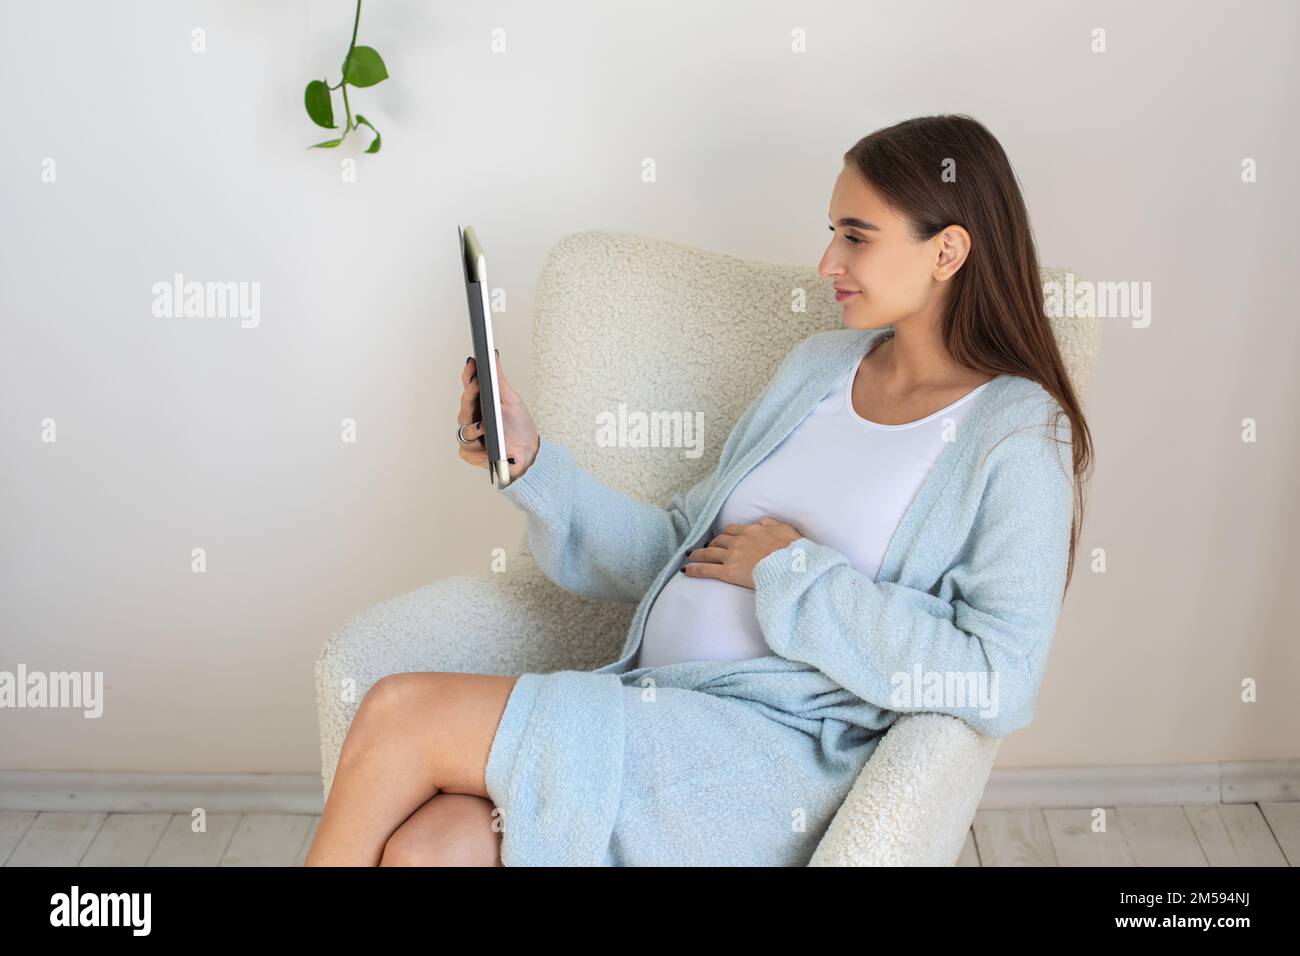 Jolie jeune femme enceinte avec un appareil à la main Banque D'Images